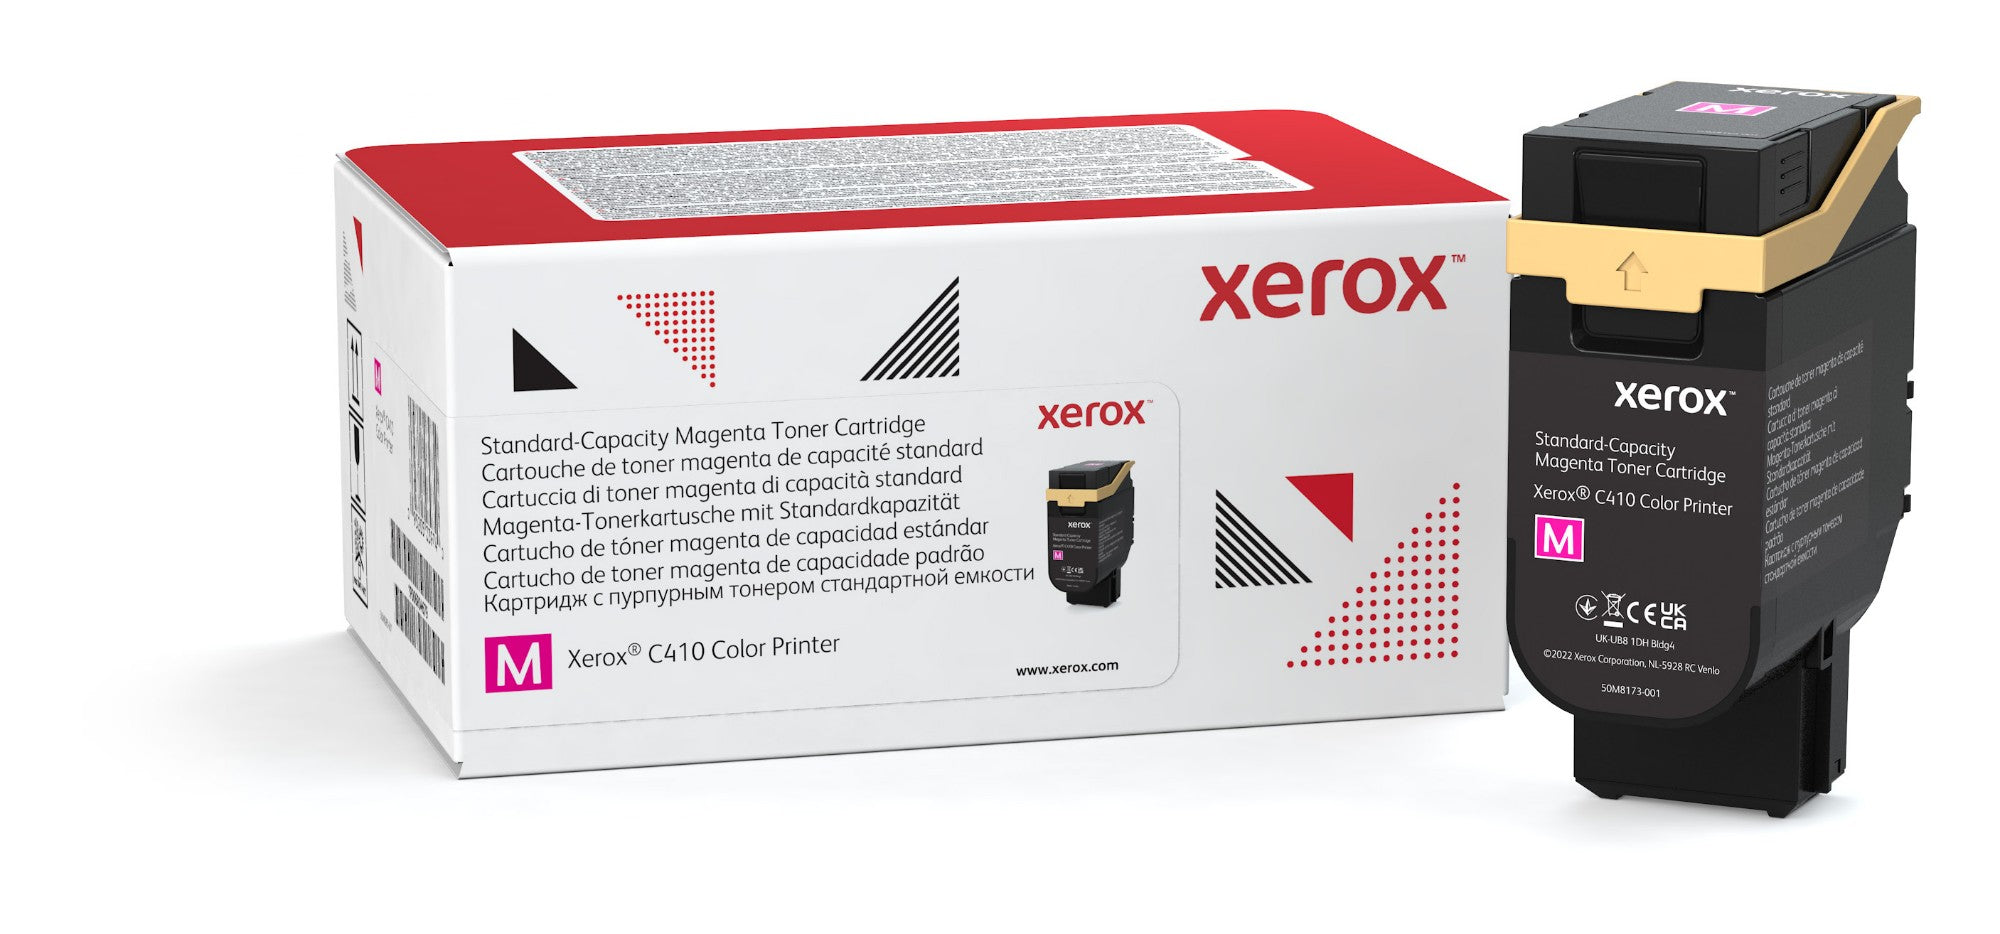 Xerox 006R04679 Toner-kit magenta, 2K pages ISO/IEC 19752 for Xerox VersaLink C 410